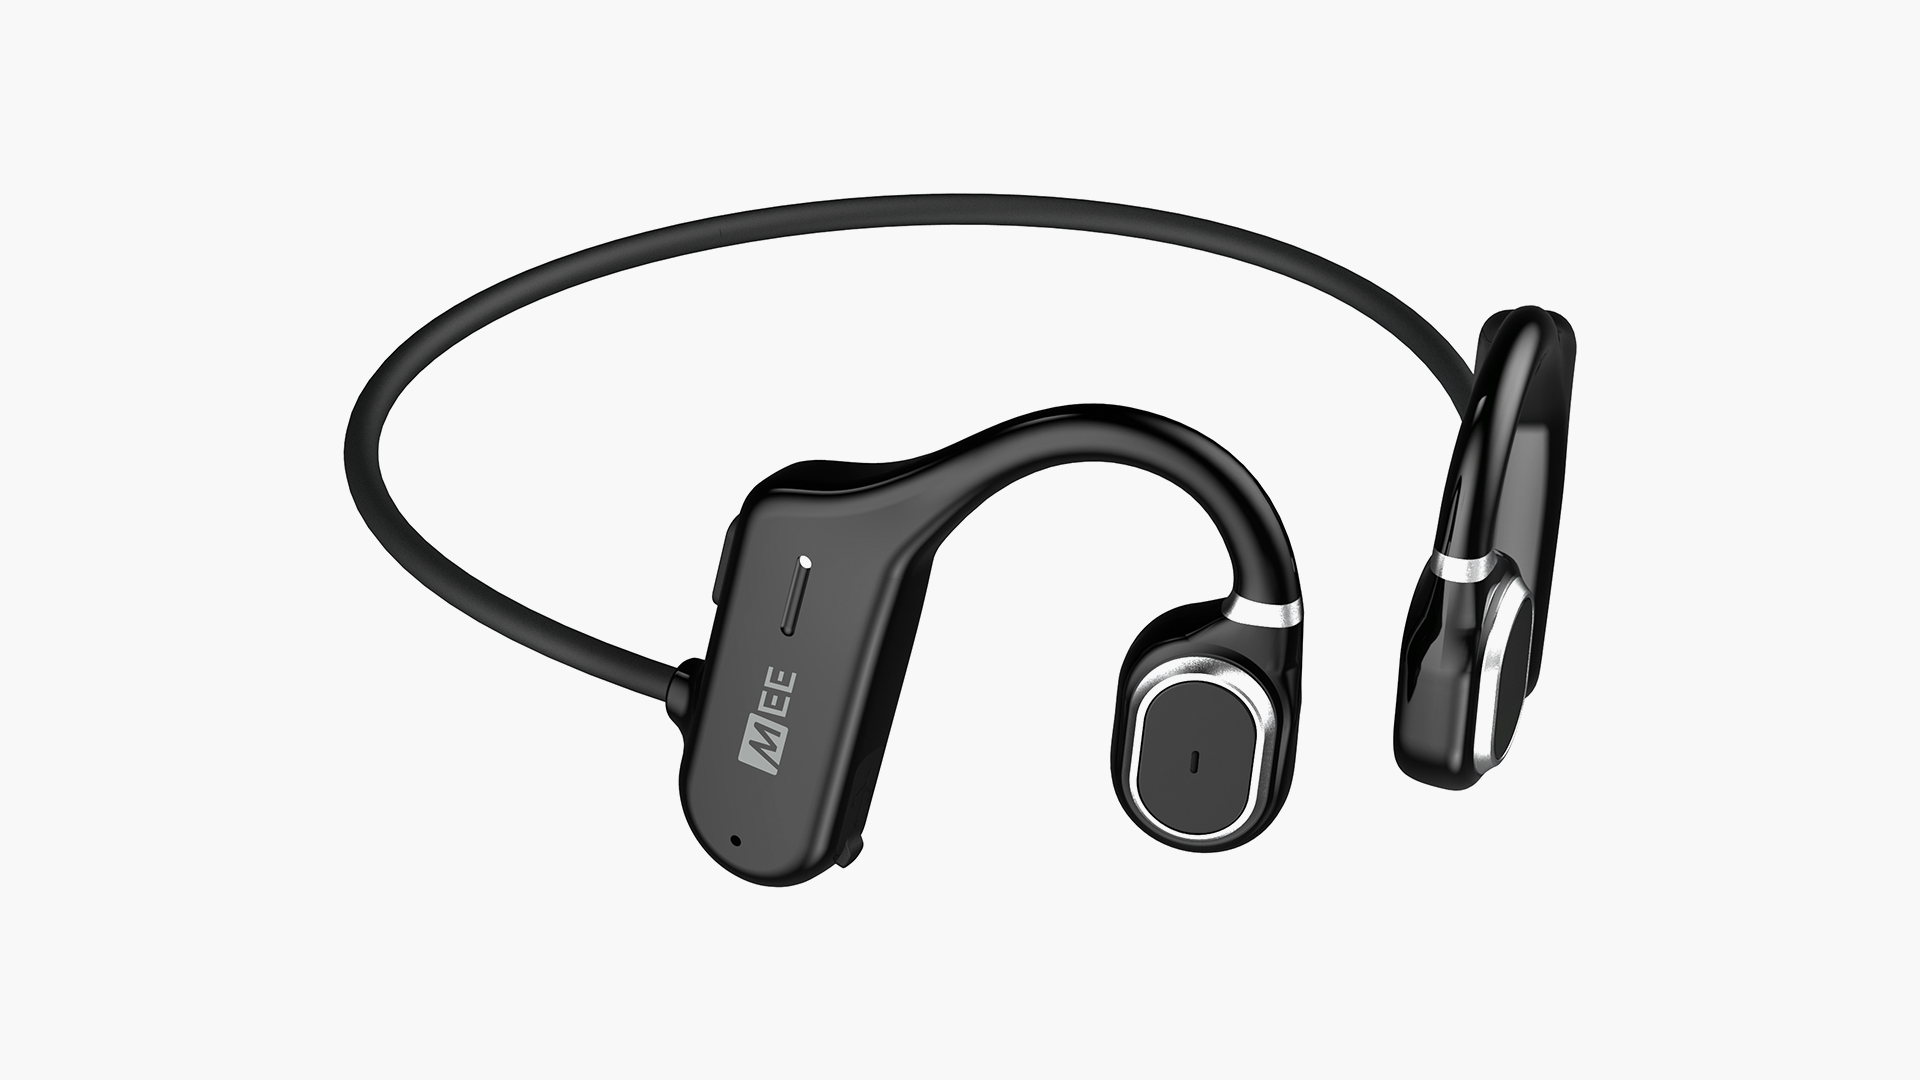 MEE audio AirHook Open-Ear Headphones